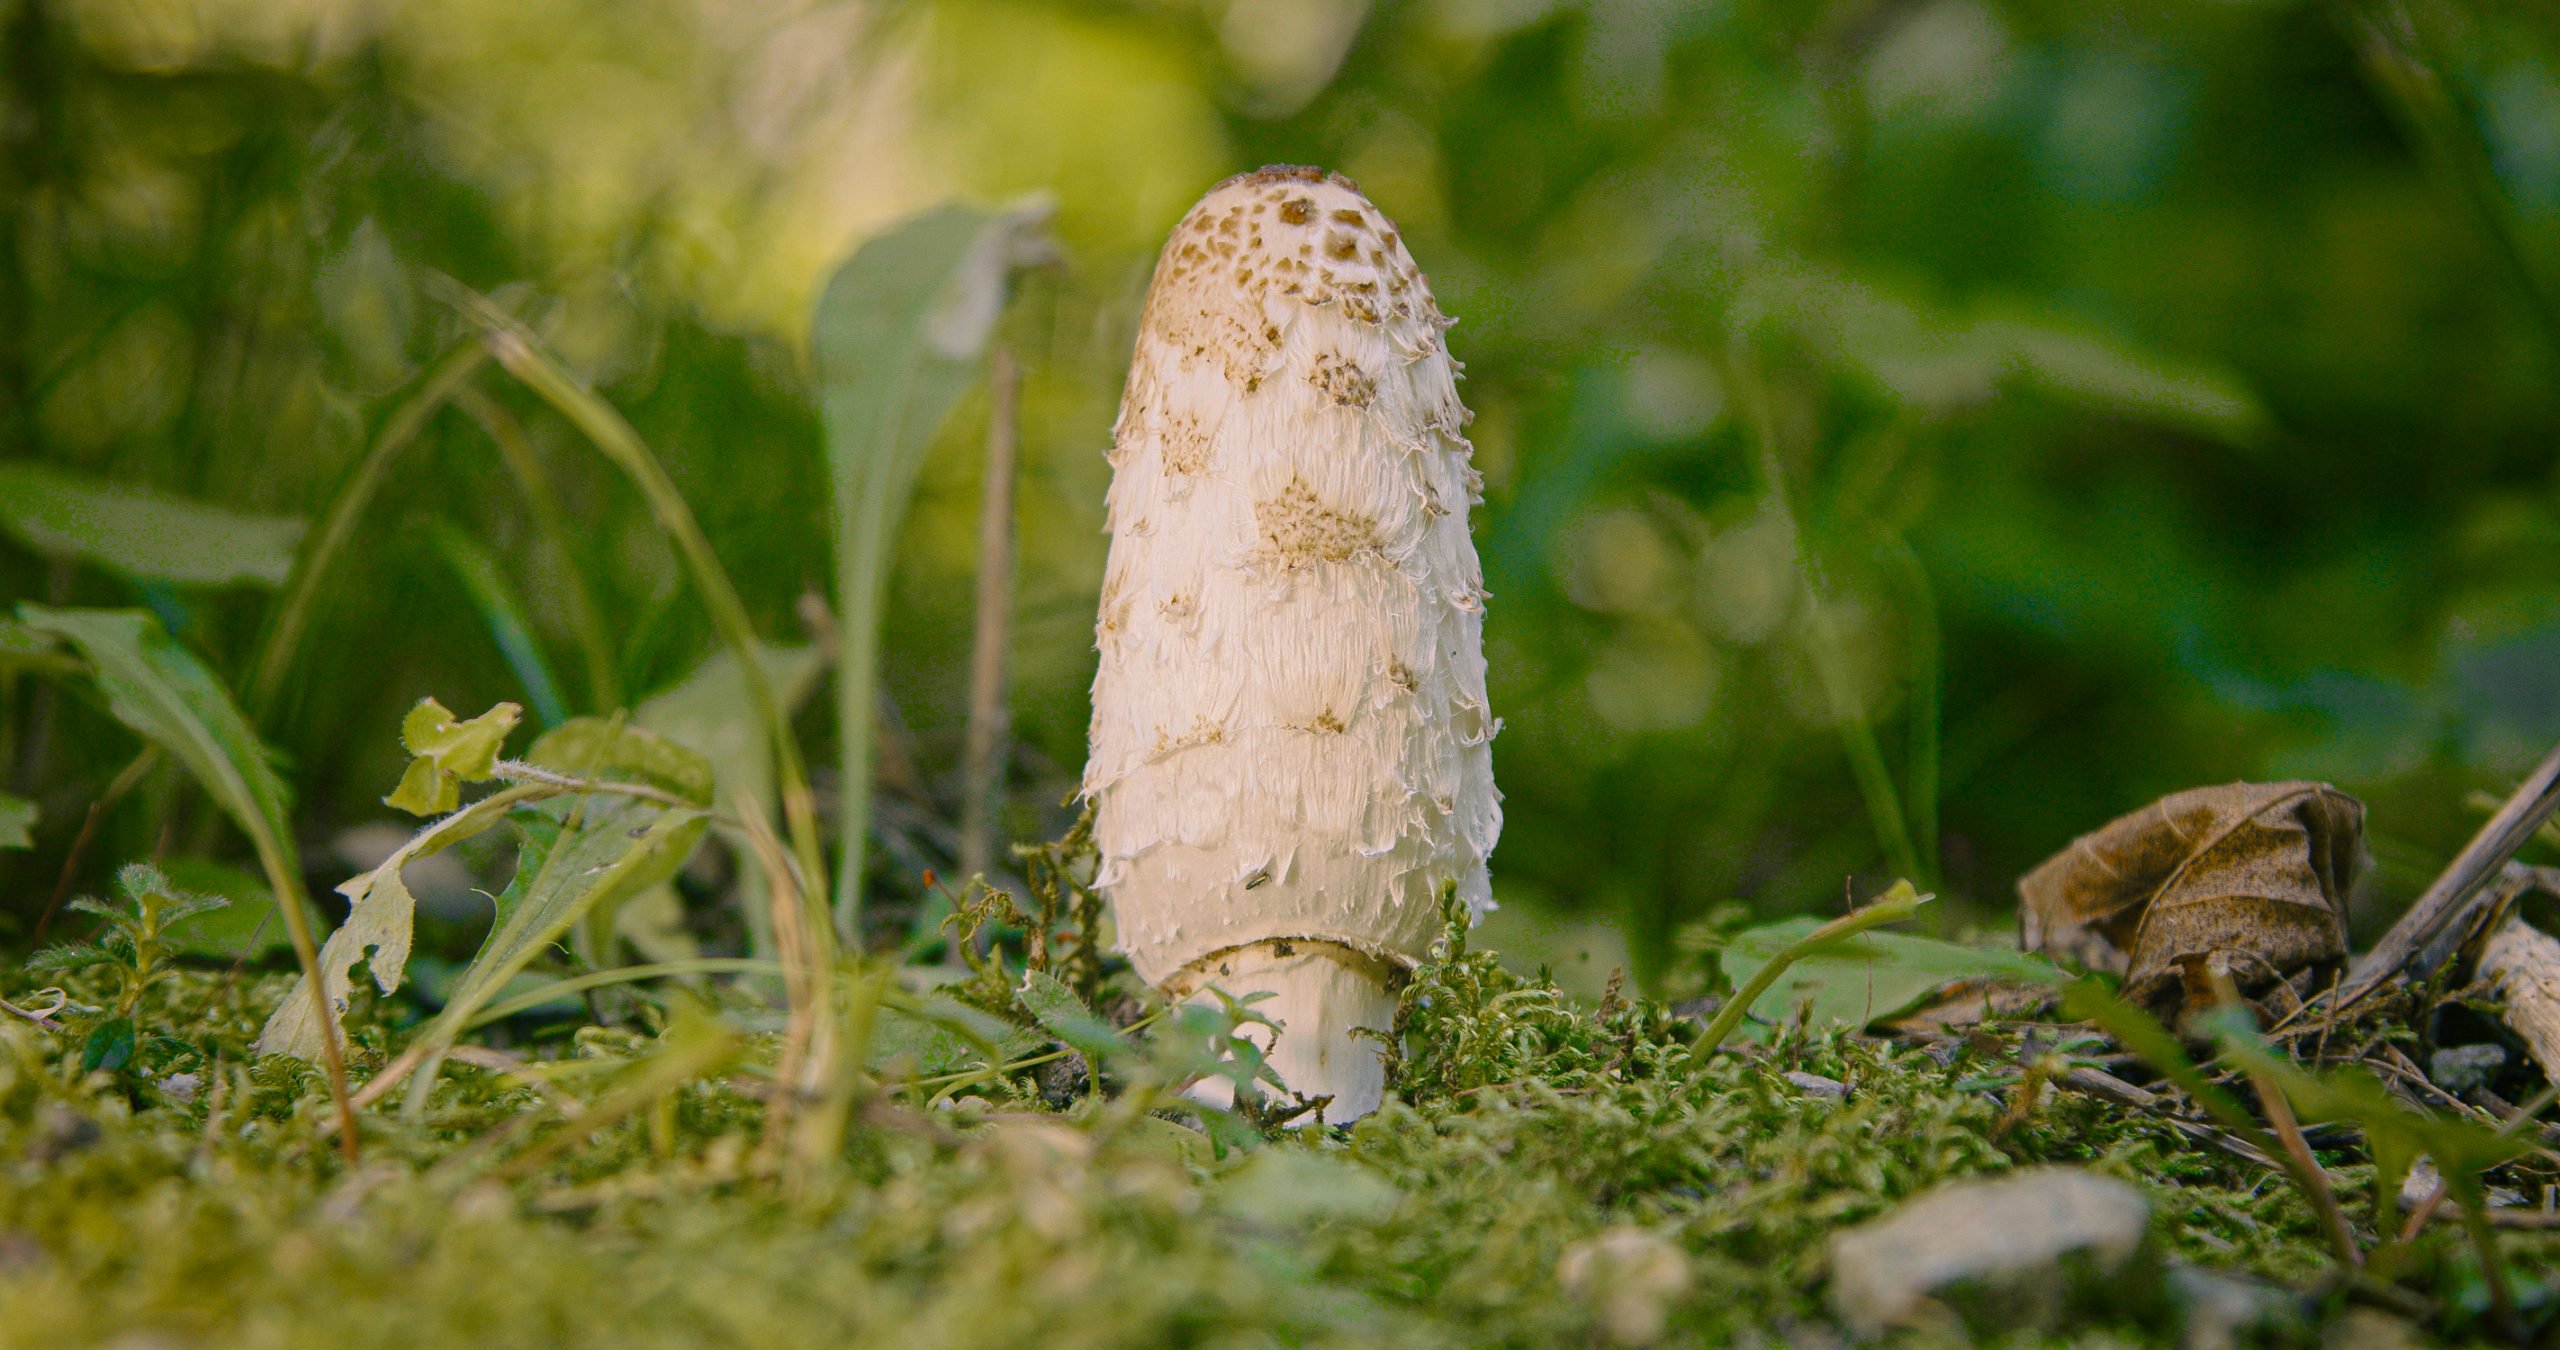 Shaggy mane mushrooms